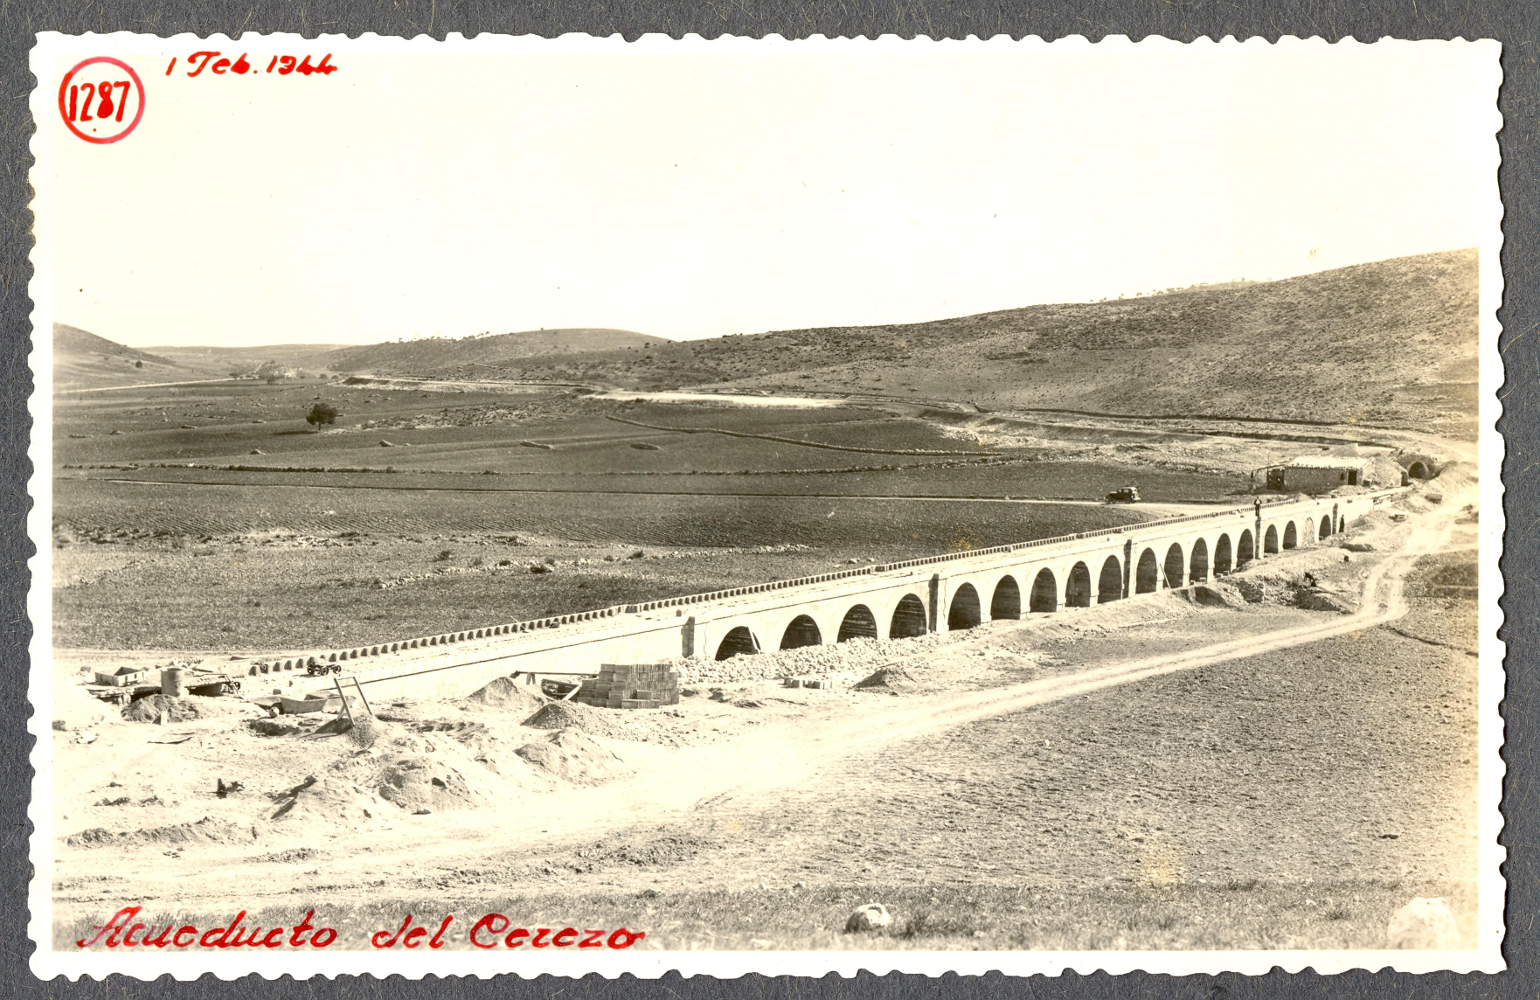 Imagen Acueducto del Cerezo (1944)